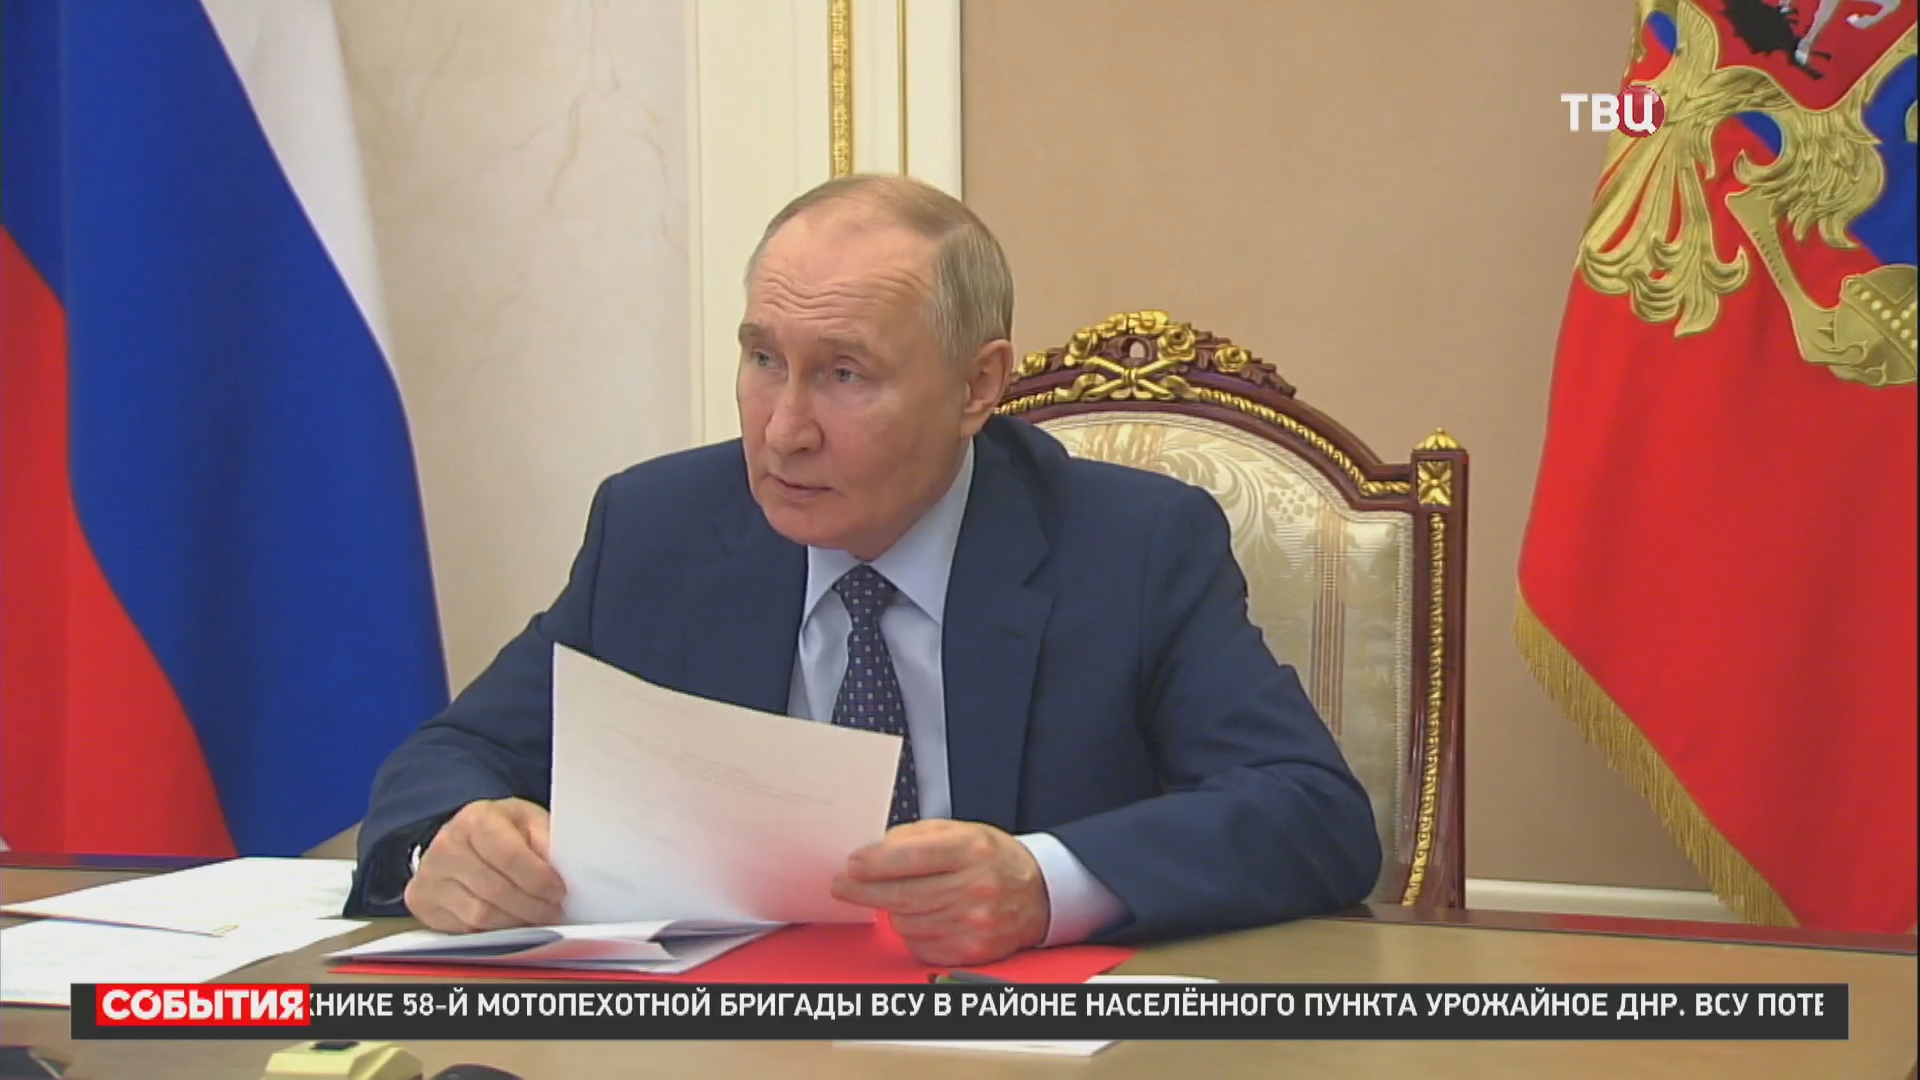 Путин обсудил с Совбезом вопросы информационной безопасности / События на ТВЦ